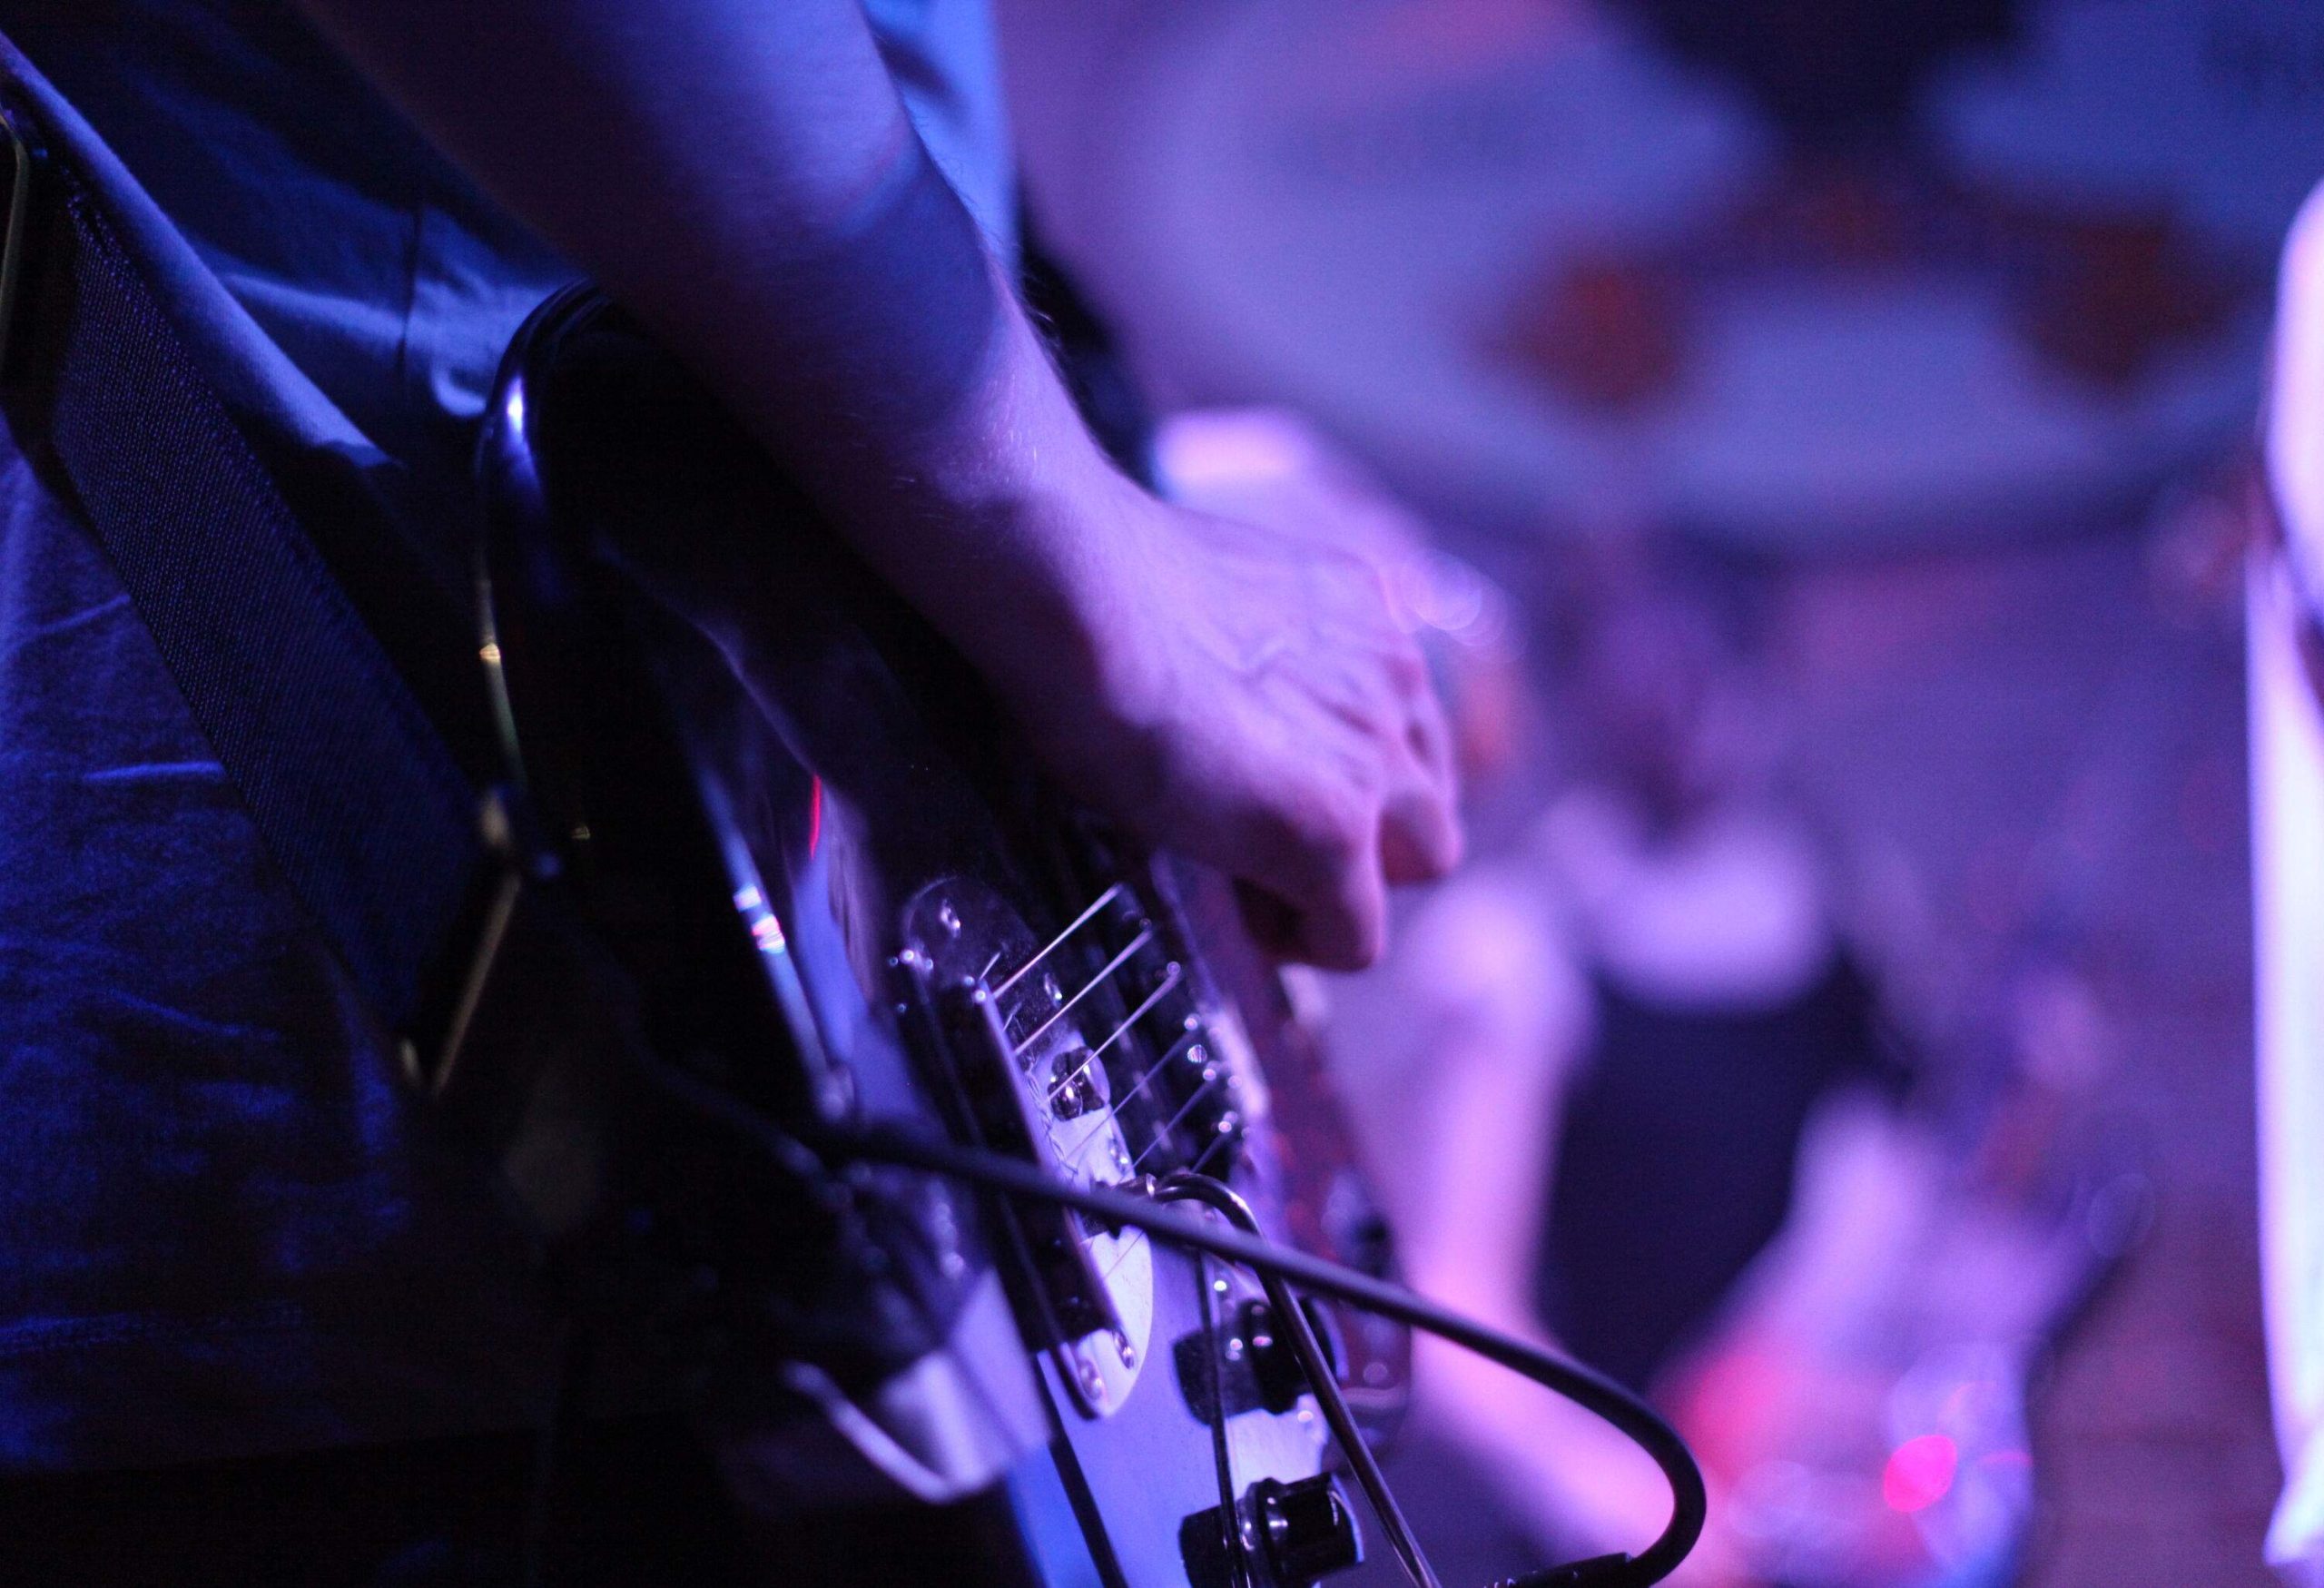 A hand strums an electric guitar under blue lights.